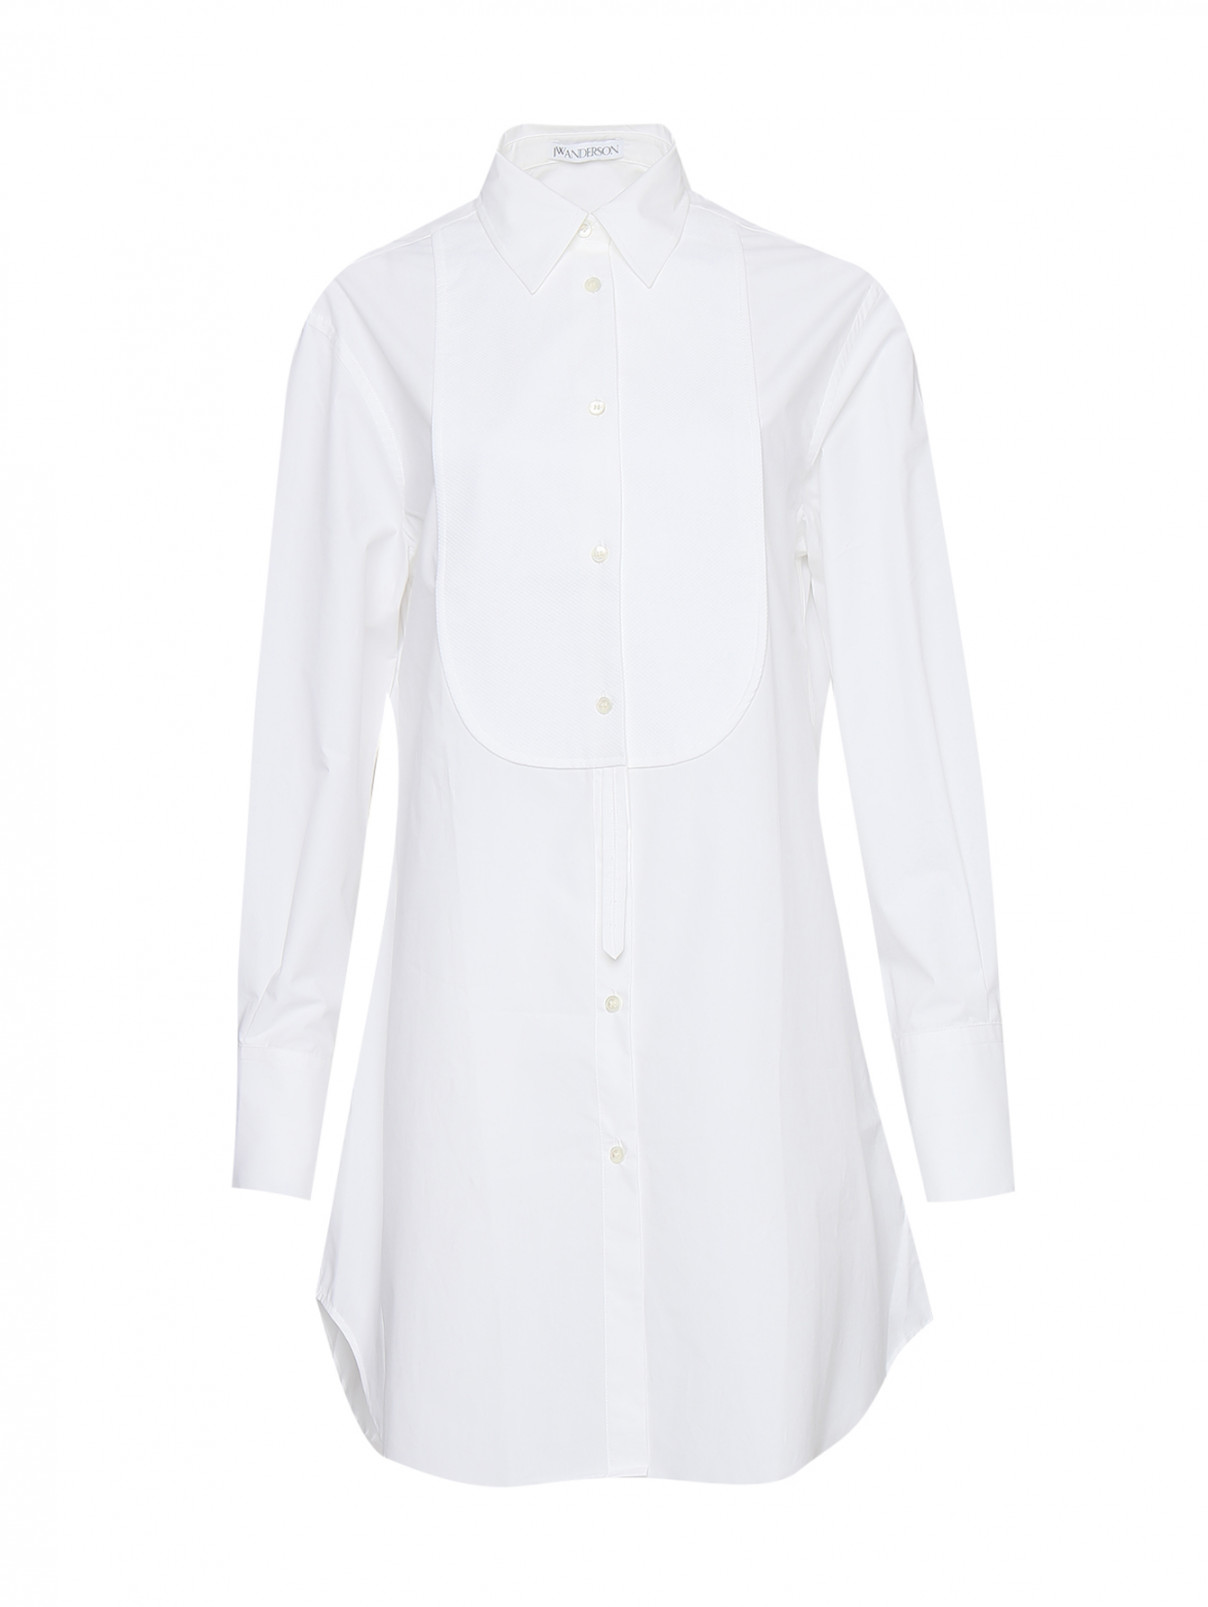 Удлиненная блуза из хлопка свободного кроя J.W. Anderson  –  Общий вид  – Цвет:  Белый